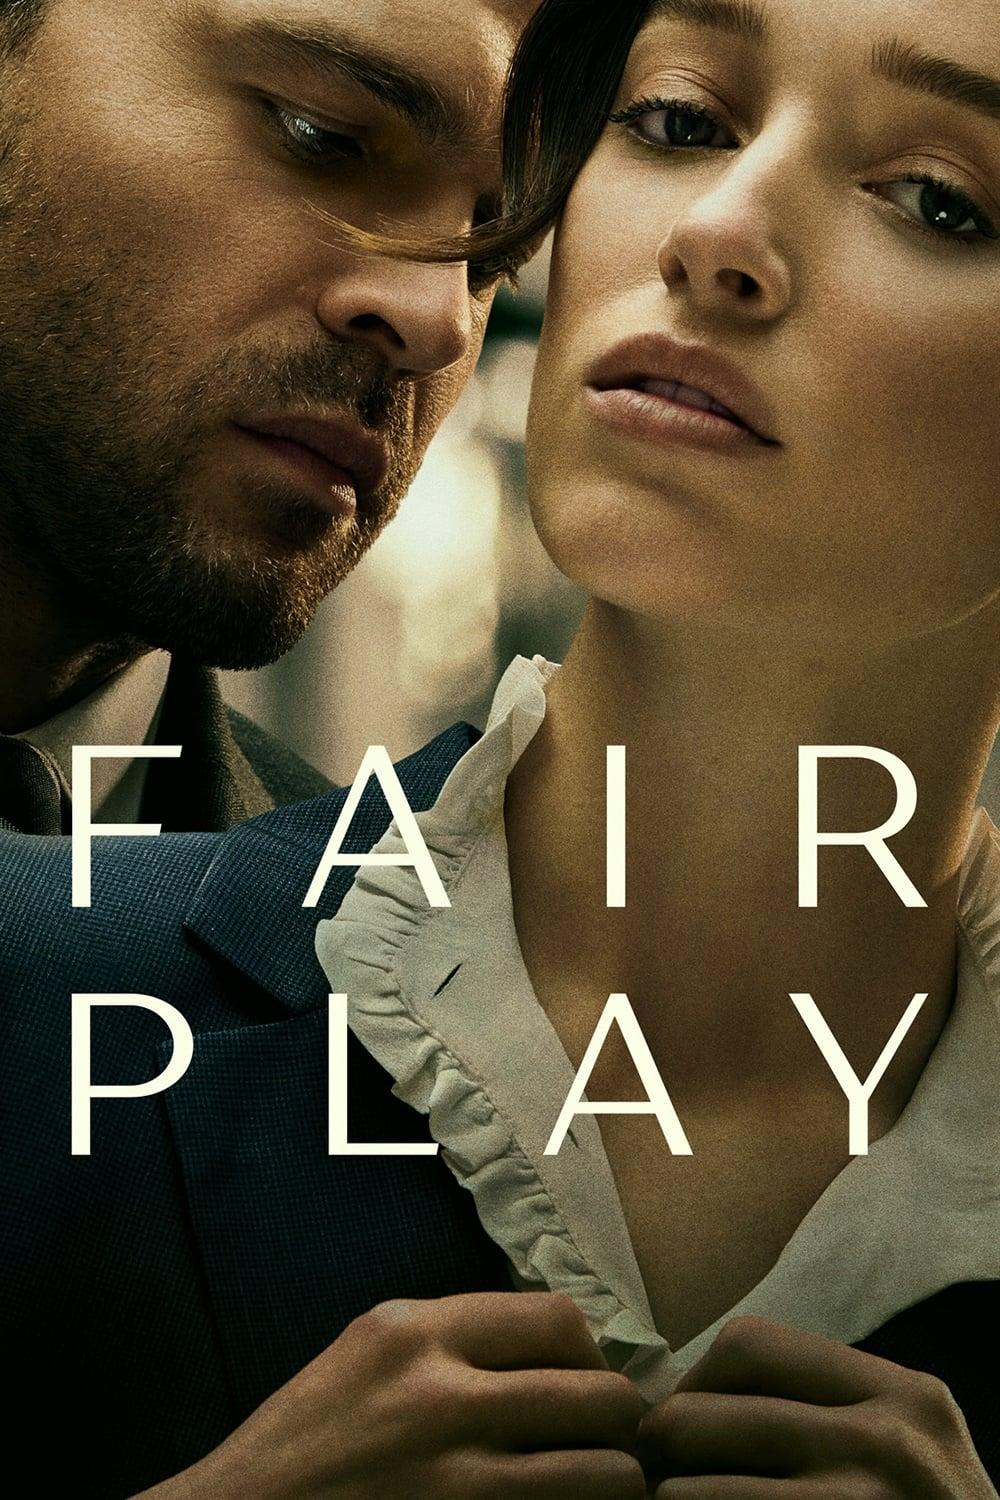 Fair Play poster